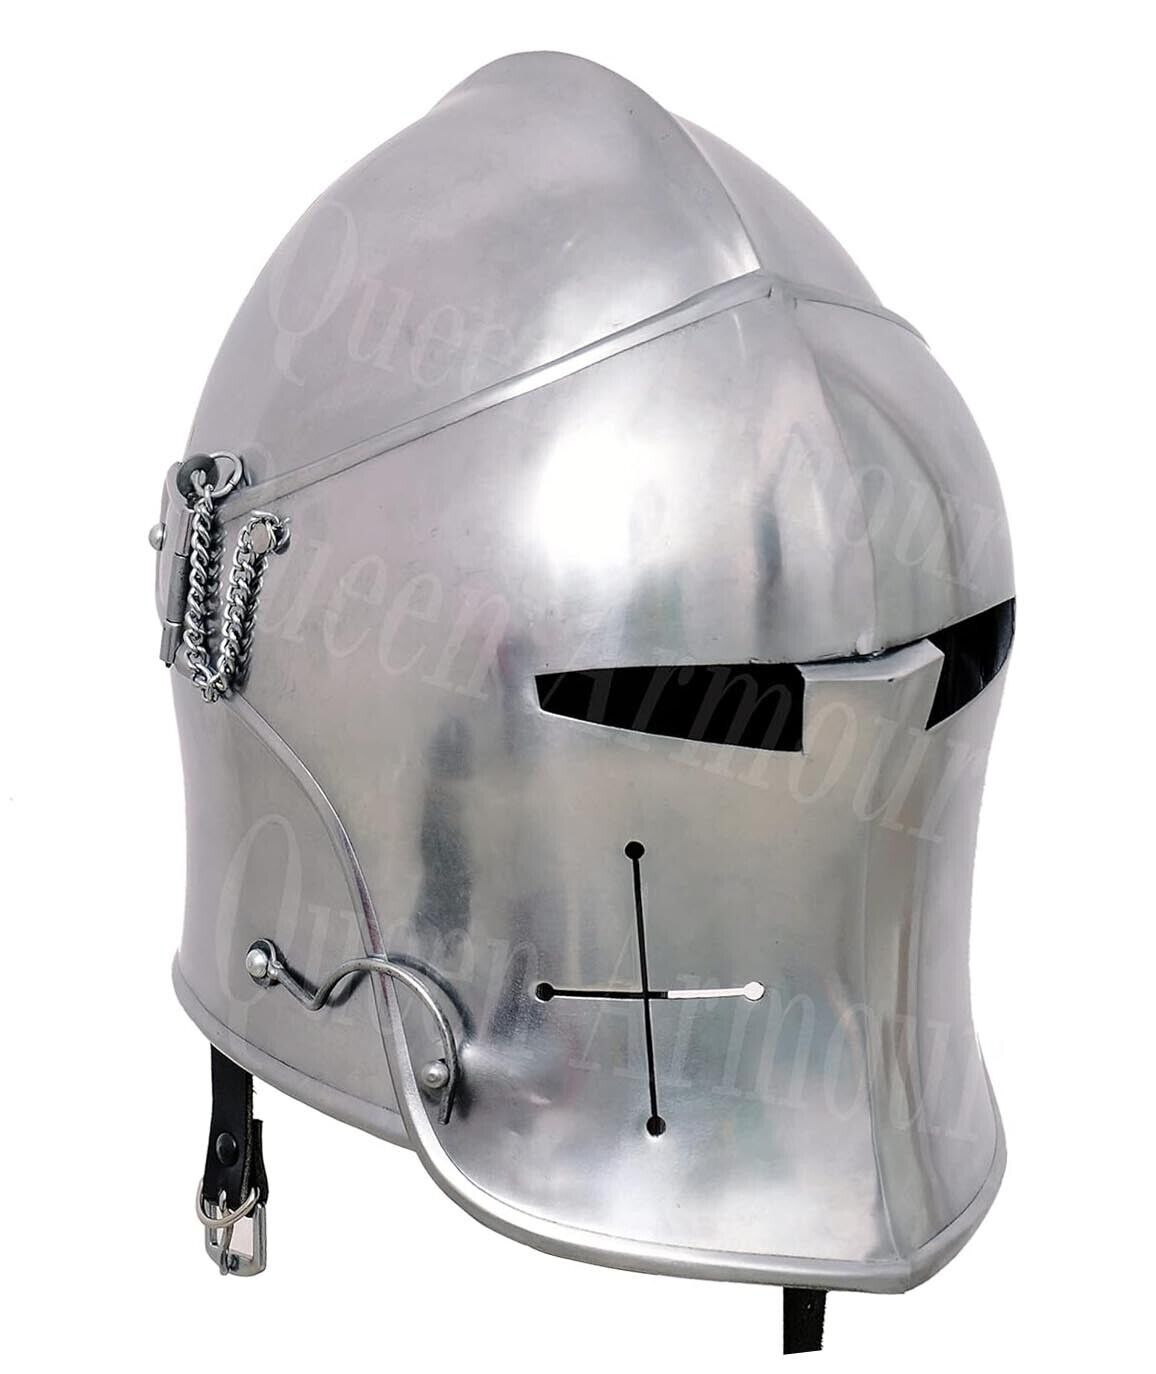 Medieval Visored Barbuda Knights Templar Crusader/Spartan/Armor Silver Helmet